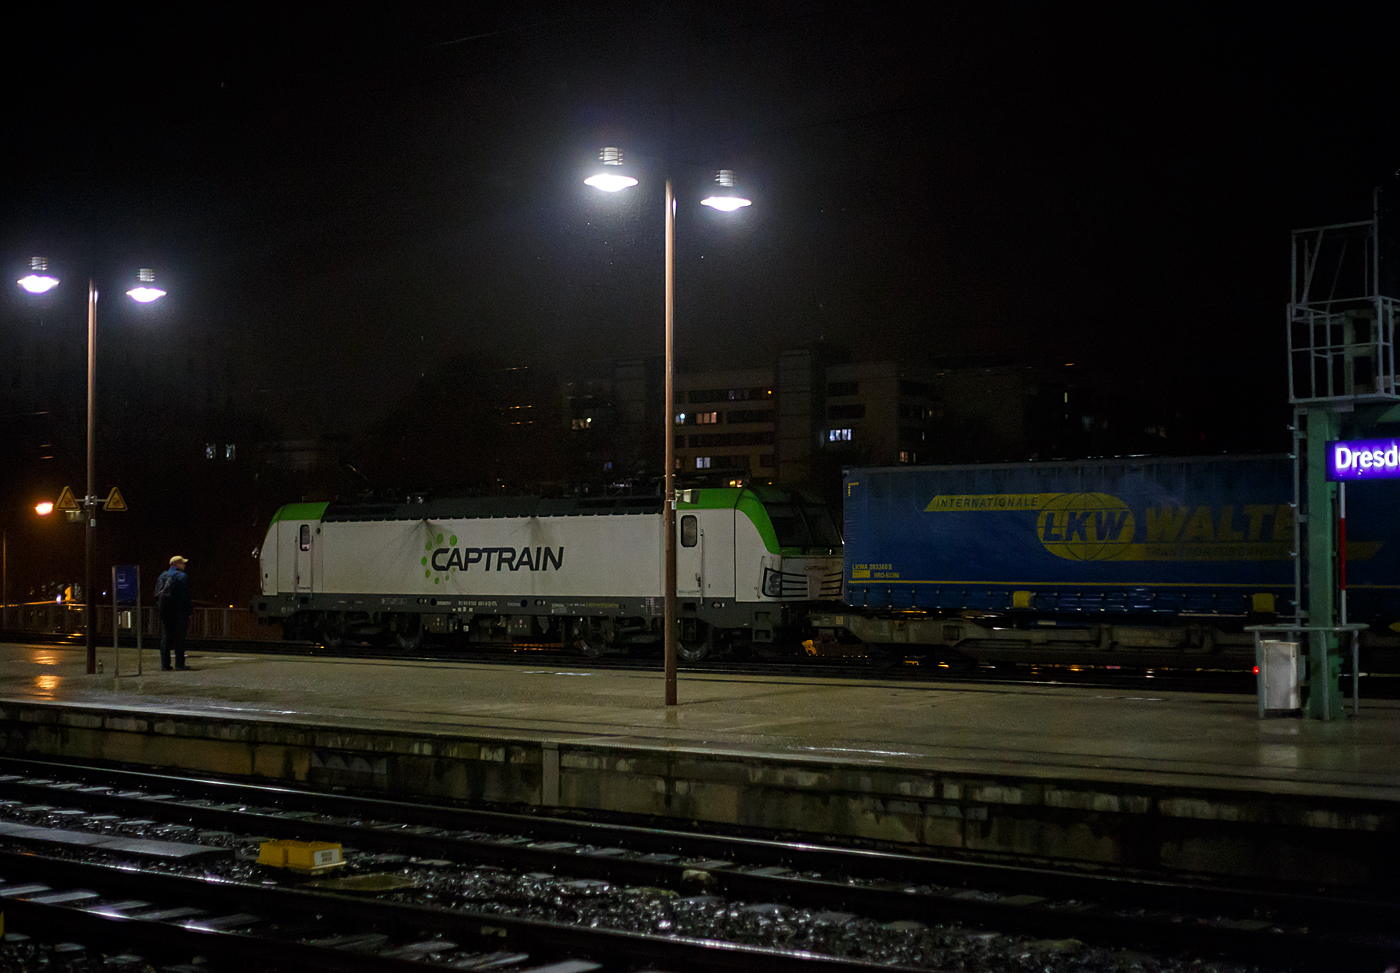 Die Siemens Vectron 193 891-9 „Michael“ (91 80 6193 891-9 D-ITL) der CAPTRAIN Deutschland GmbH / ITL Eisenbahngesellschaft mbH fährt am Abend des 06,12.2022 (20:15 Uhr) mit einem LKW-Walter KLV-Zug durch den Hauptbahnhof Dresden in Richtung Pirna.

Die Multisystemlokomotive Siemens Vectron MS wurde 2015 von Siemens Mobilitiy in München-Allach unter der Fabriknummer 21964 gebaut. Die Vectron MS mit einer Leistung von 6.4 MW ist für 160 km/h, in Deutschland, Österreich, Ungarn, Polen, Tschechien und der Slowakei (D/A/H/PL/CZ/SK) zugelassen.

Captrain ist das Gesicht der SNCF außerhalb Frankreichs. Die SNCF Logistics ist die Transport- und Logistiksparte der französischen Société Nationale des Chemins de fer Français (SNCF).  Die ITL Eisenbahngesellschaft mbH (ITL) mit Sitz in Dresden gehört seit Dezember 2010 vollständig zur SNCF-Gruppe und ist Teil des Captrain-Netzes. 